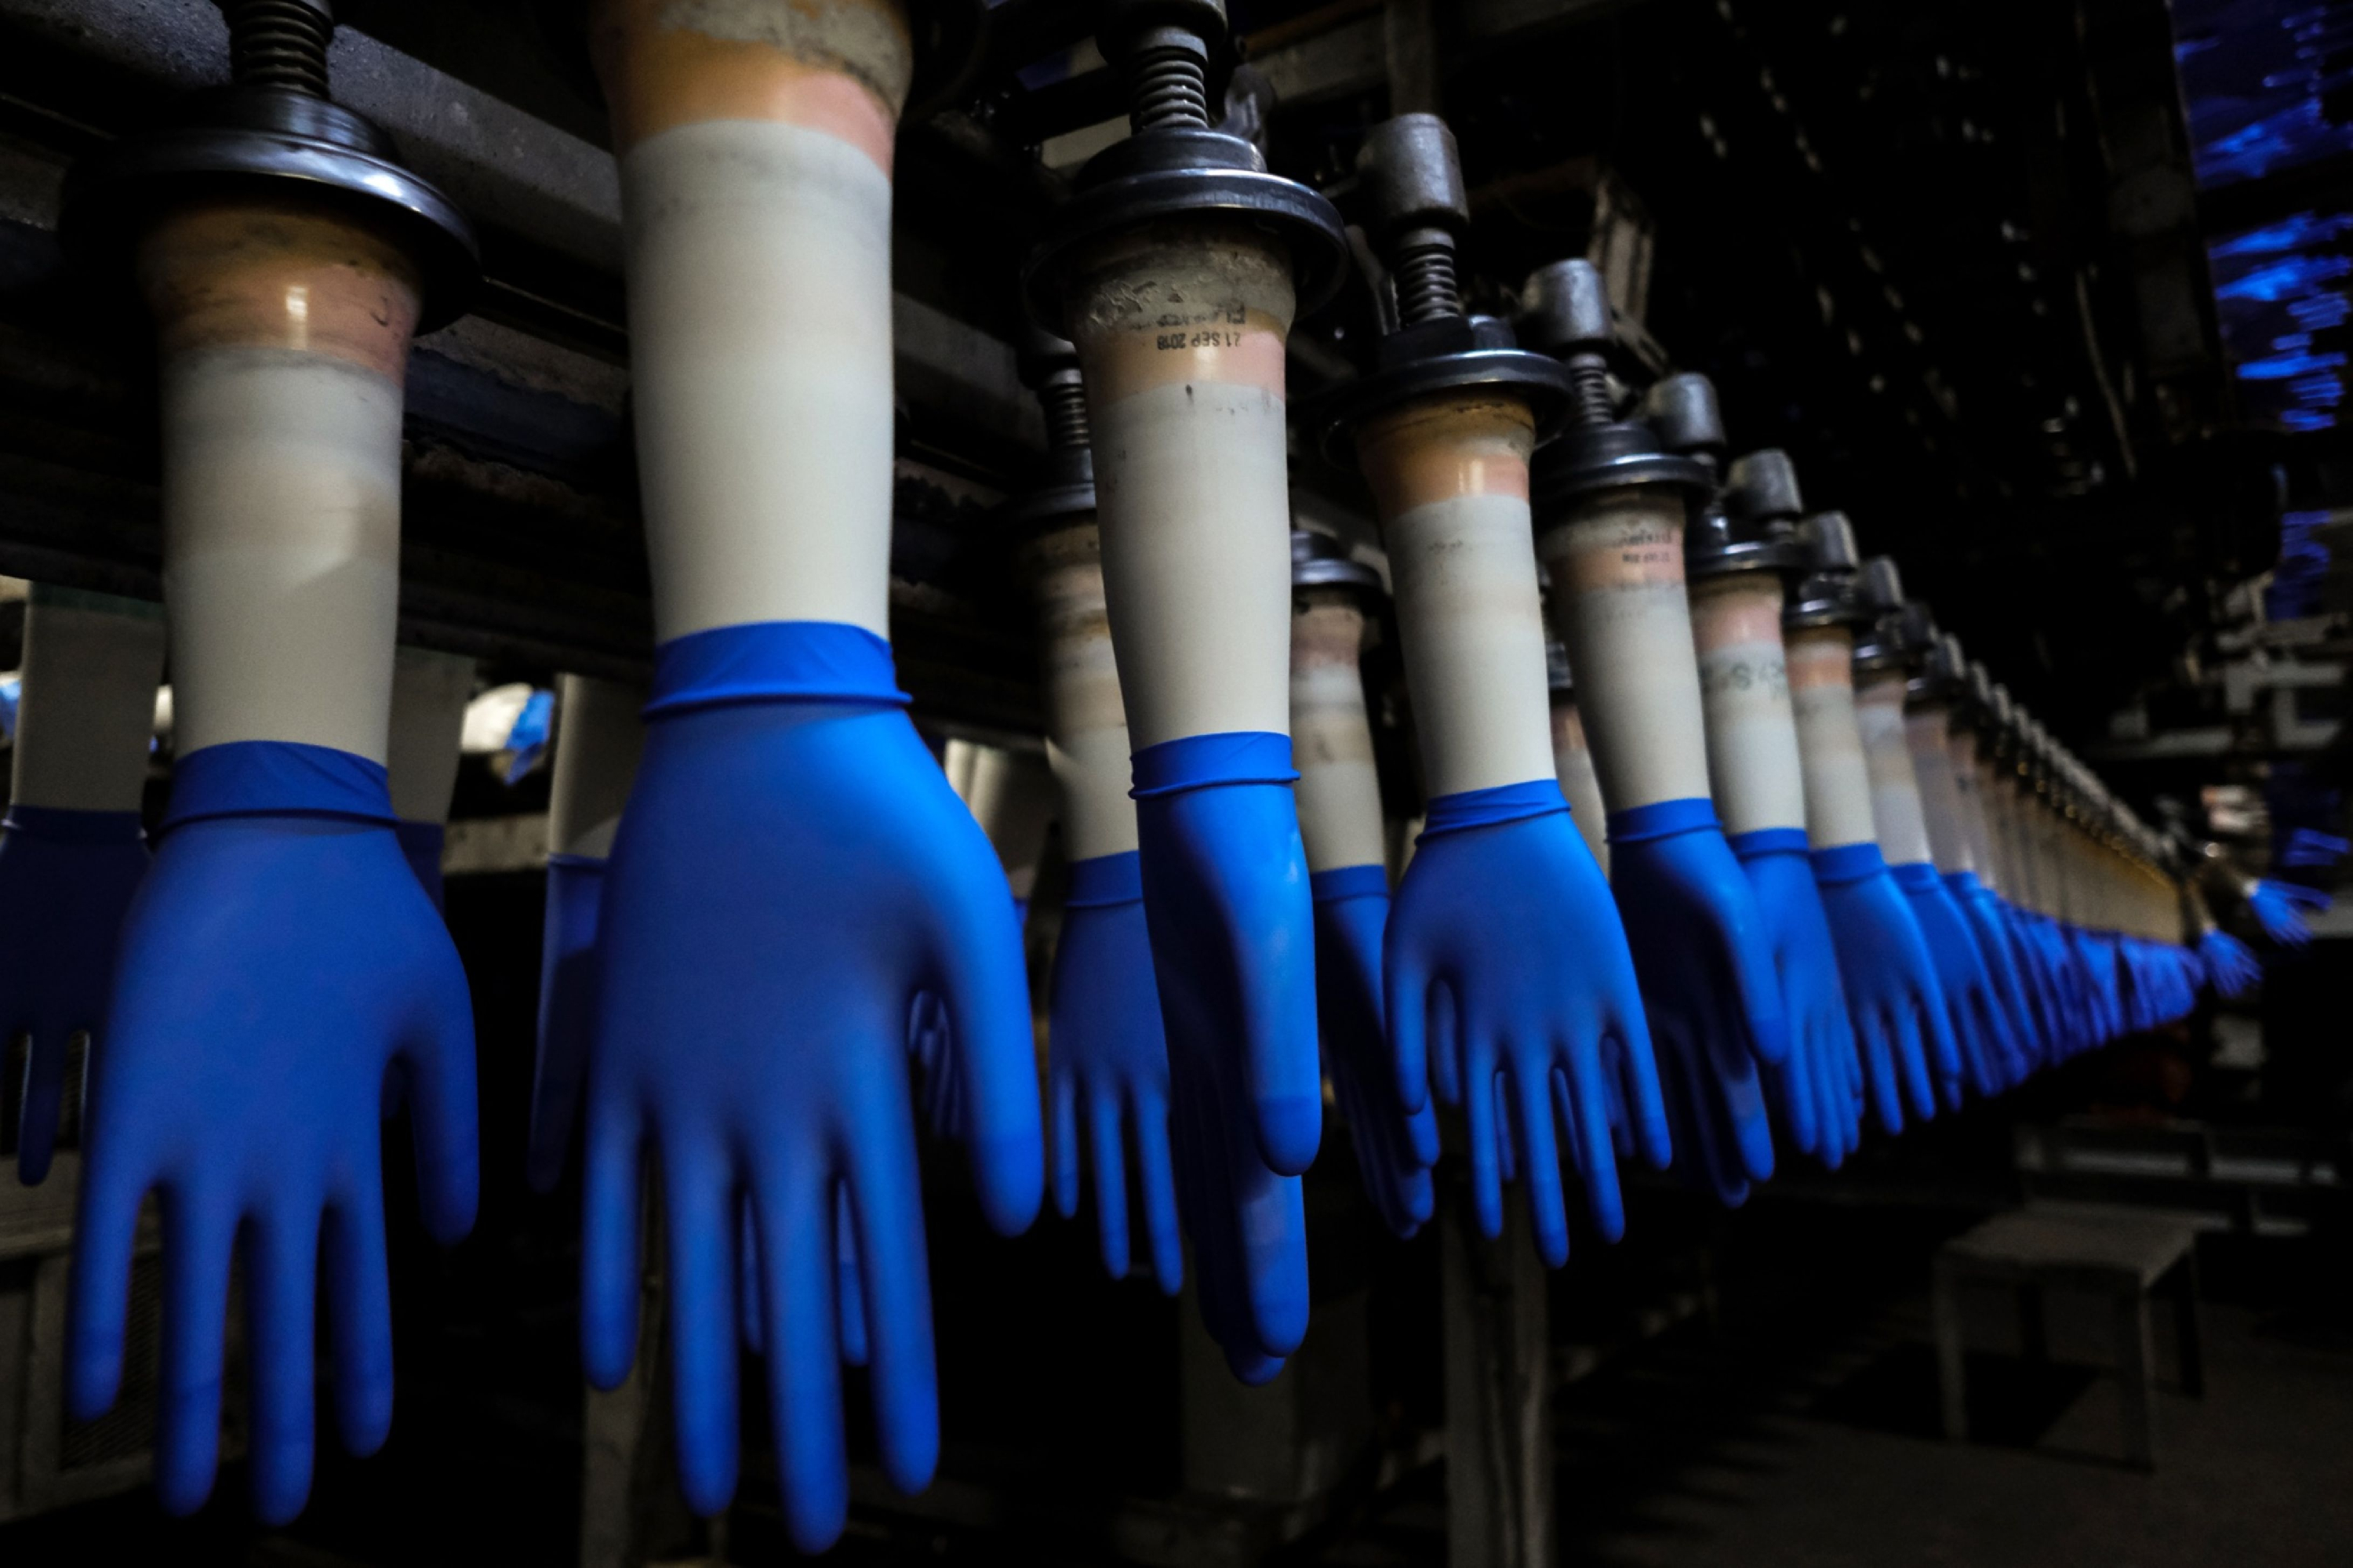 Kényszermunkával készül a gumikesztyű a világ legnagyobb gyárában